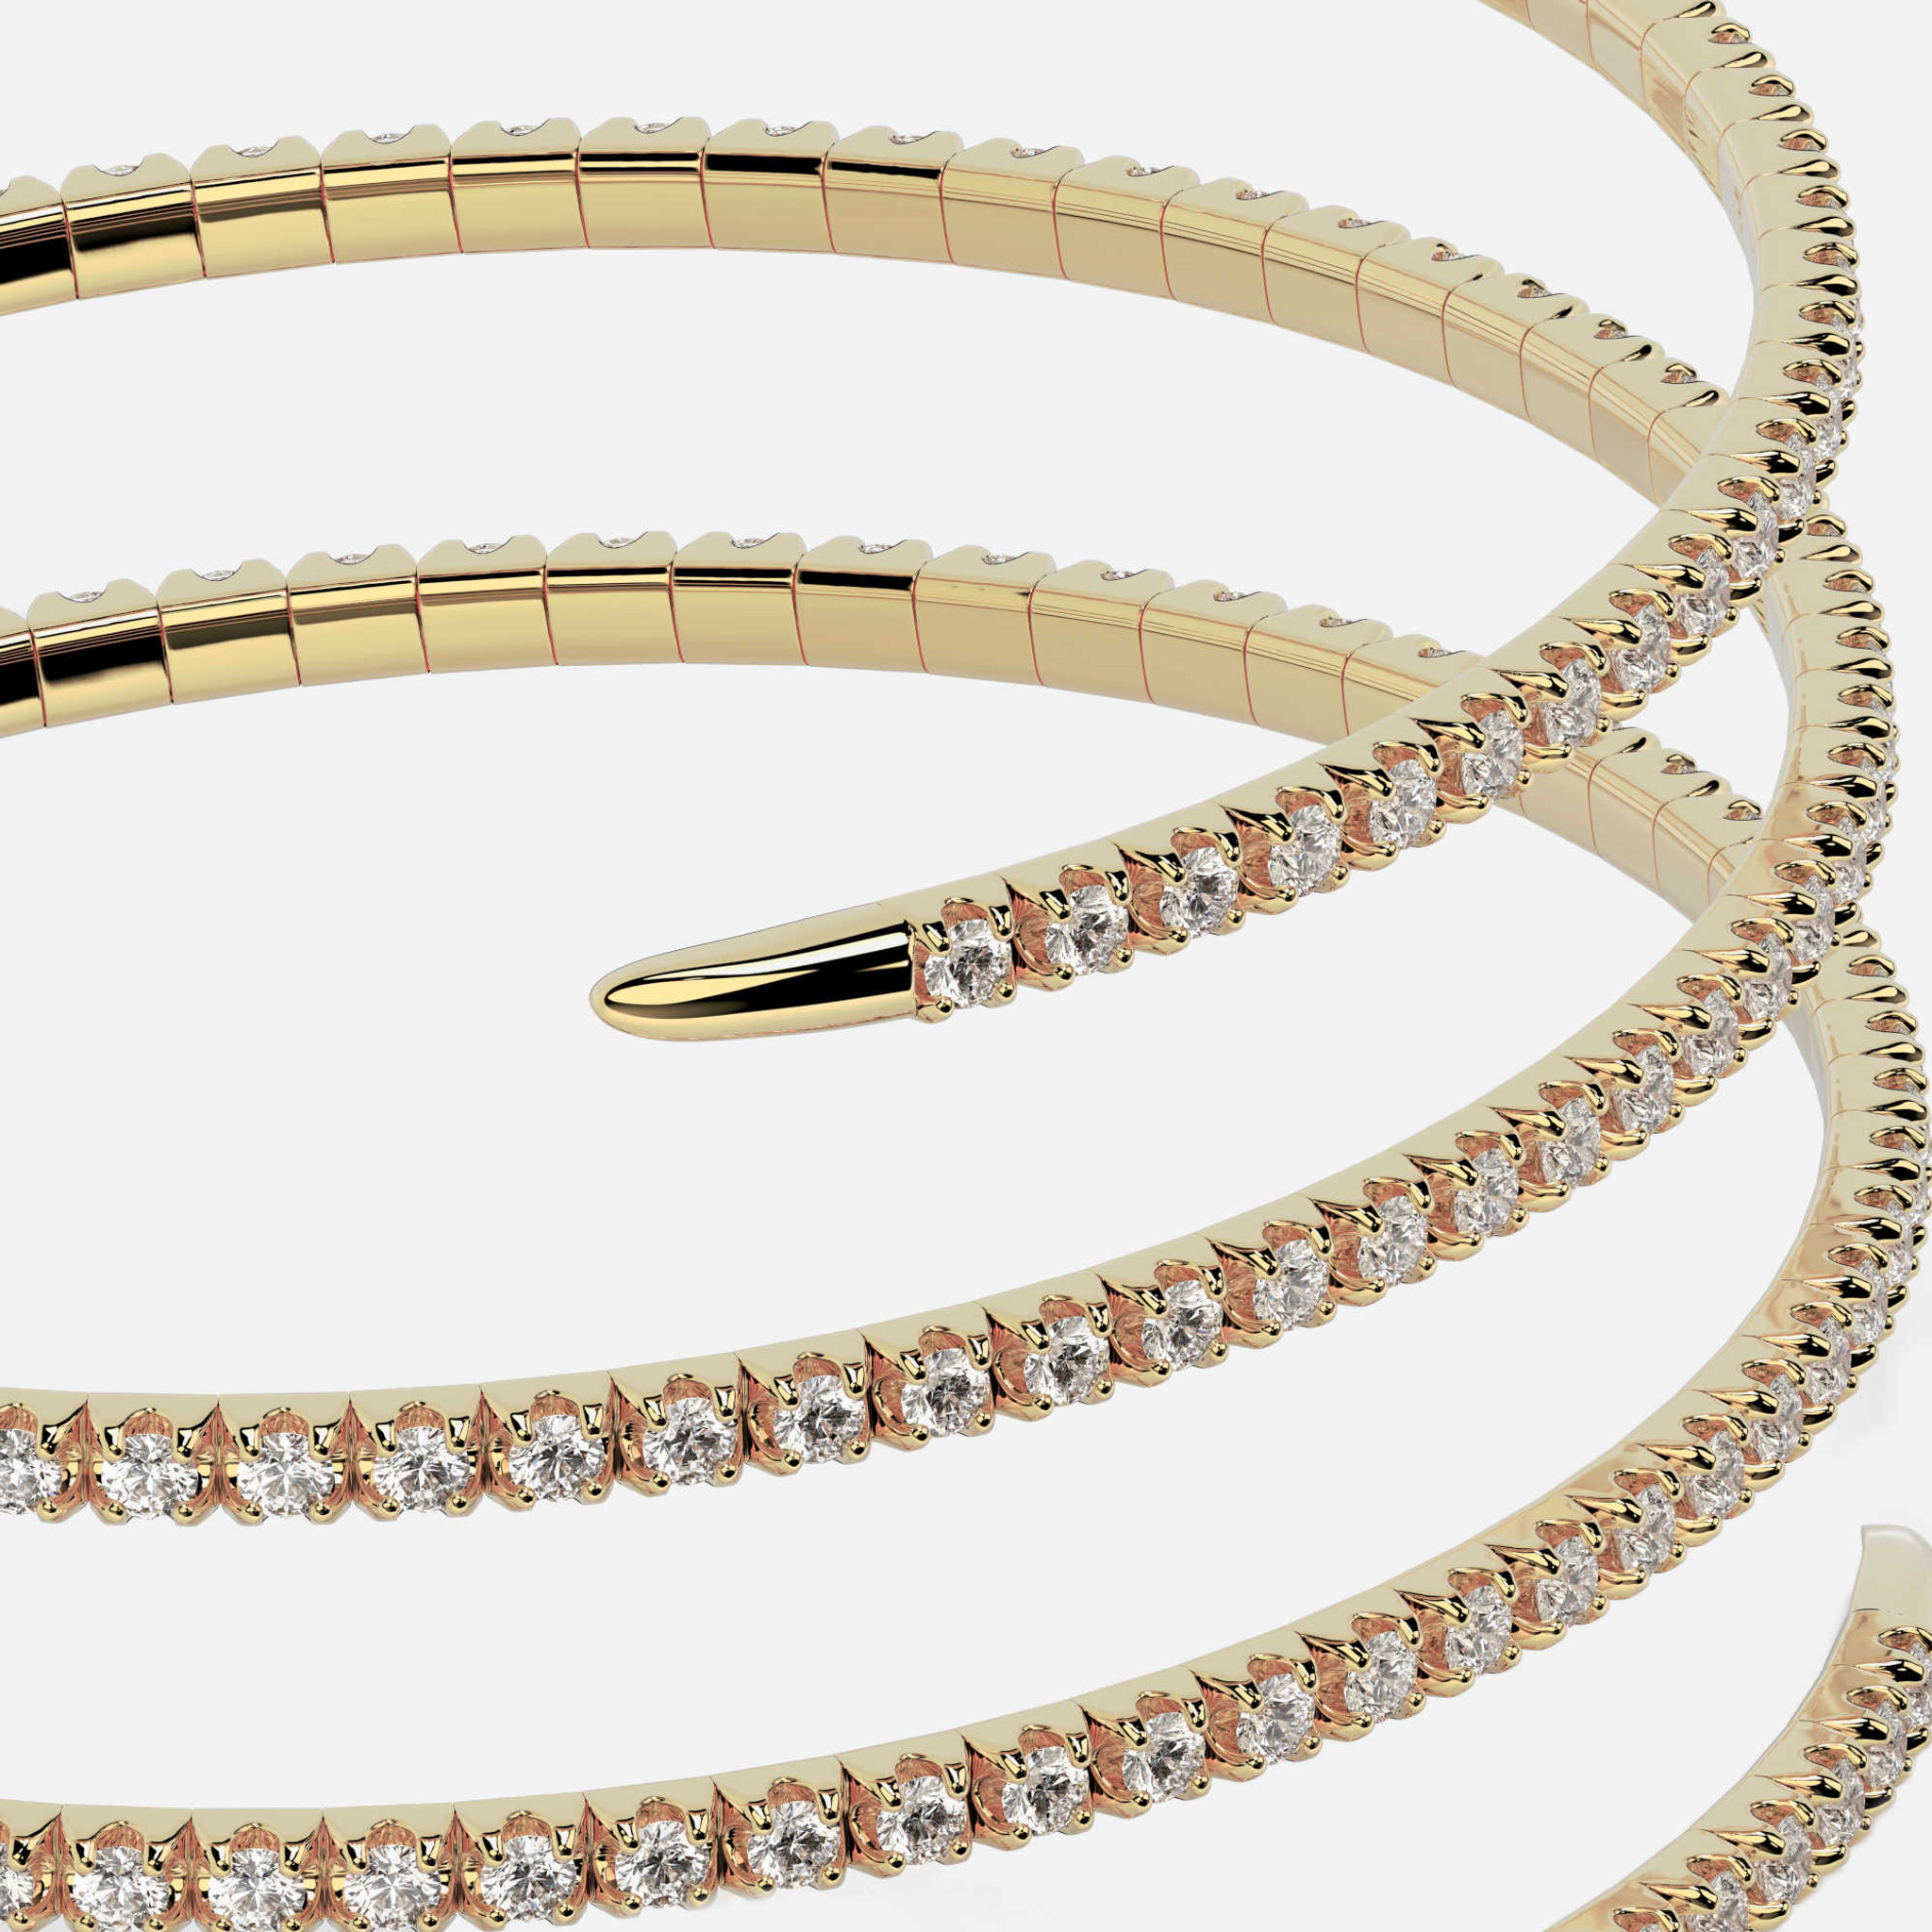 Una vista detallada de nuestra pulsera Pave Diamond Spiral, con sus 7" de longitud y 35 mm de ancho, revela un encanto atemporal.